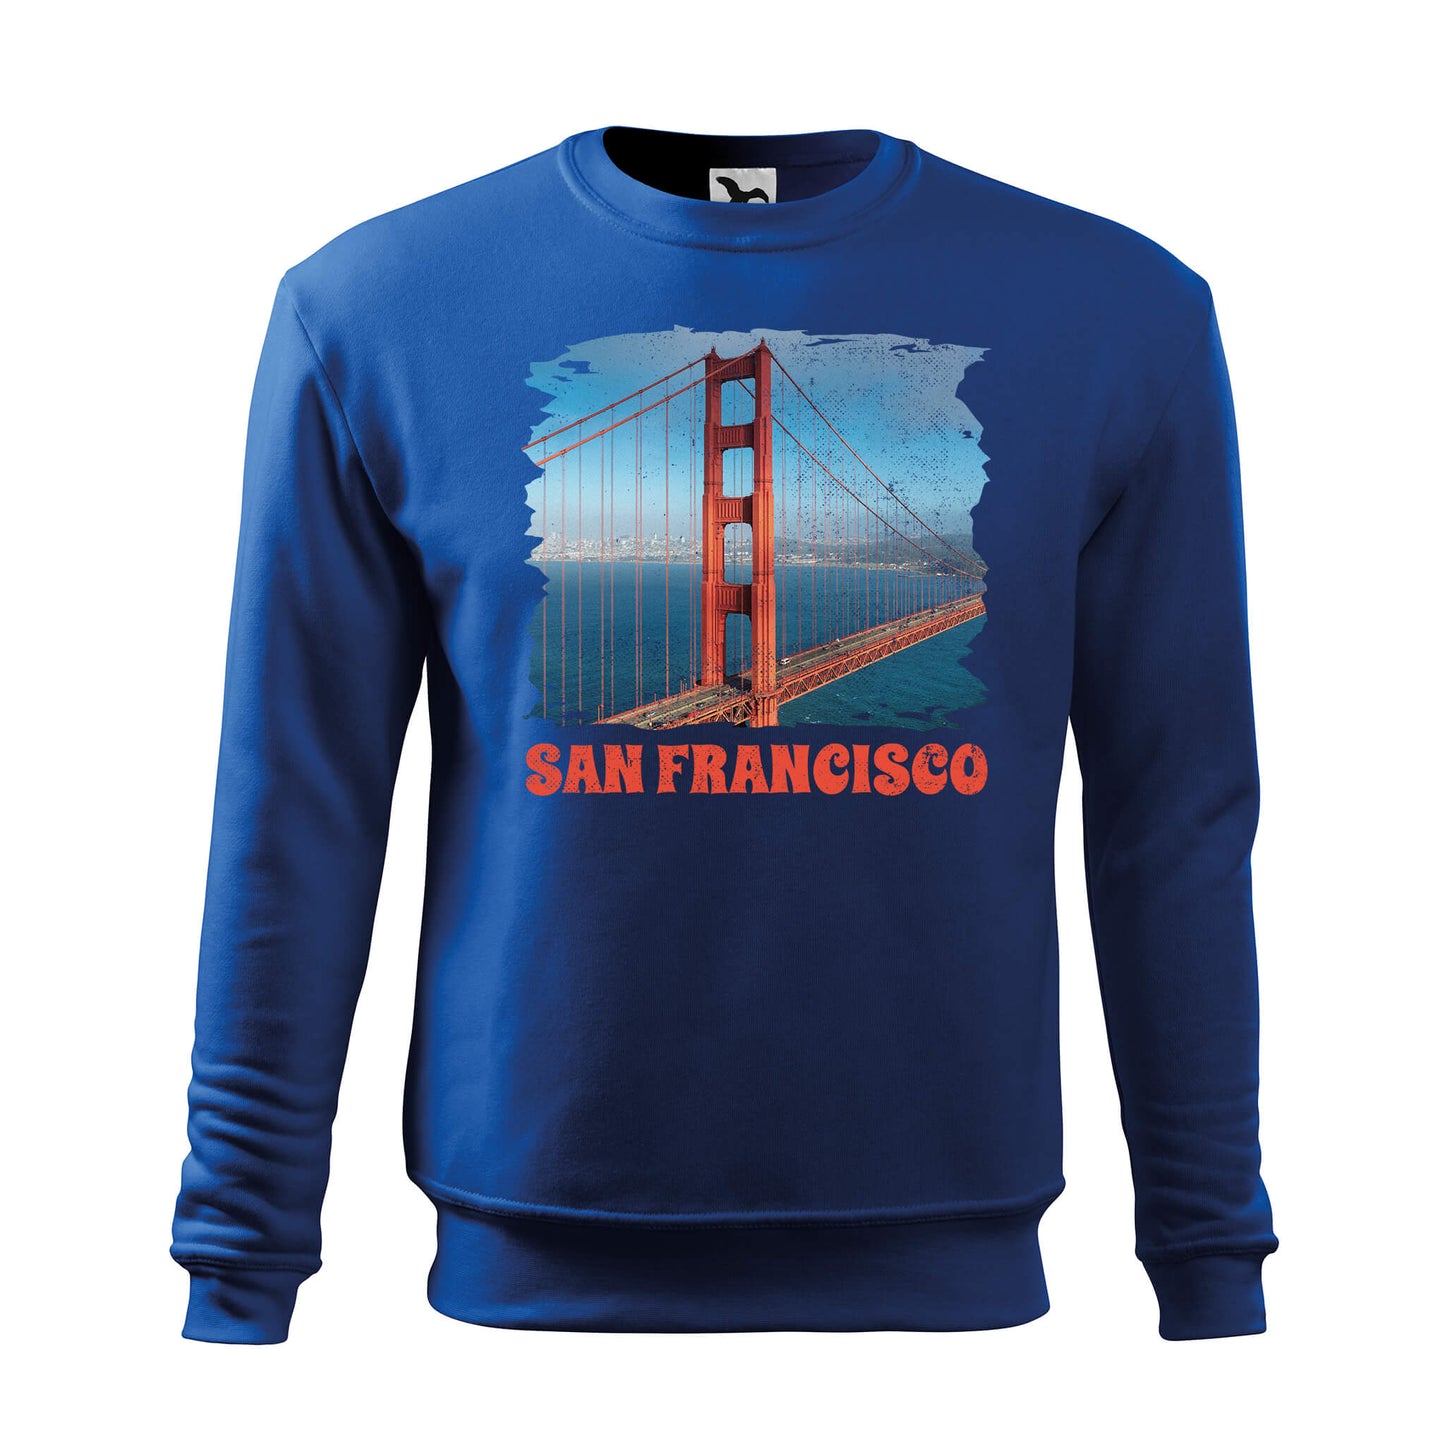 San Francisco pulóver - férfi